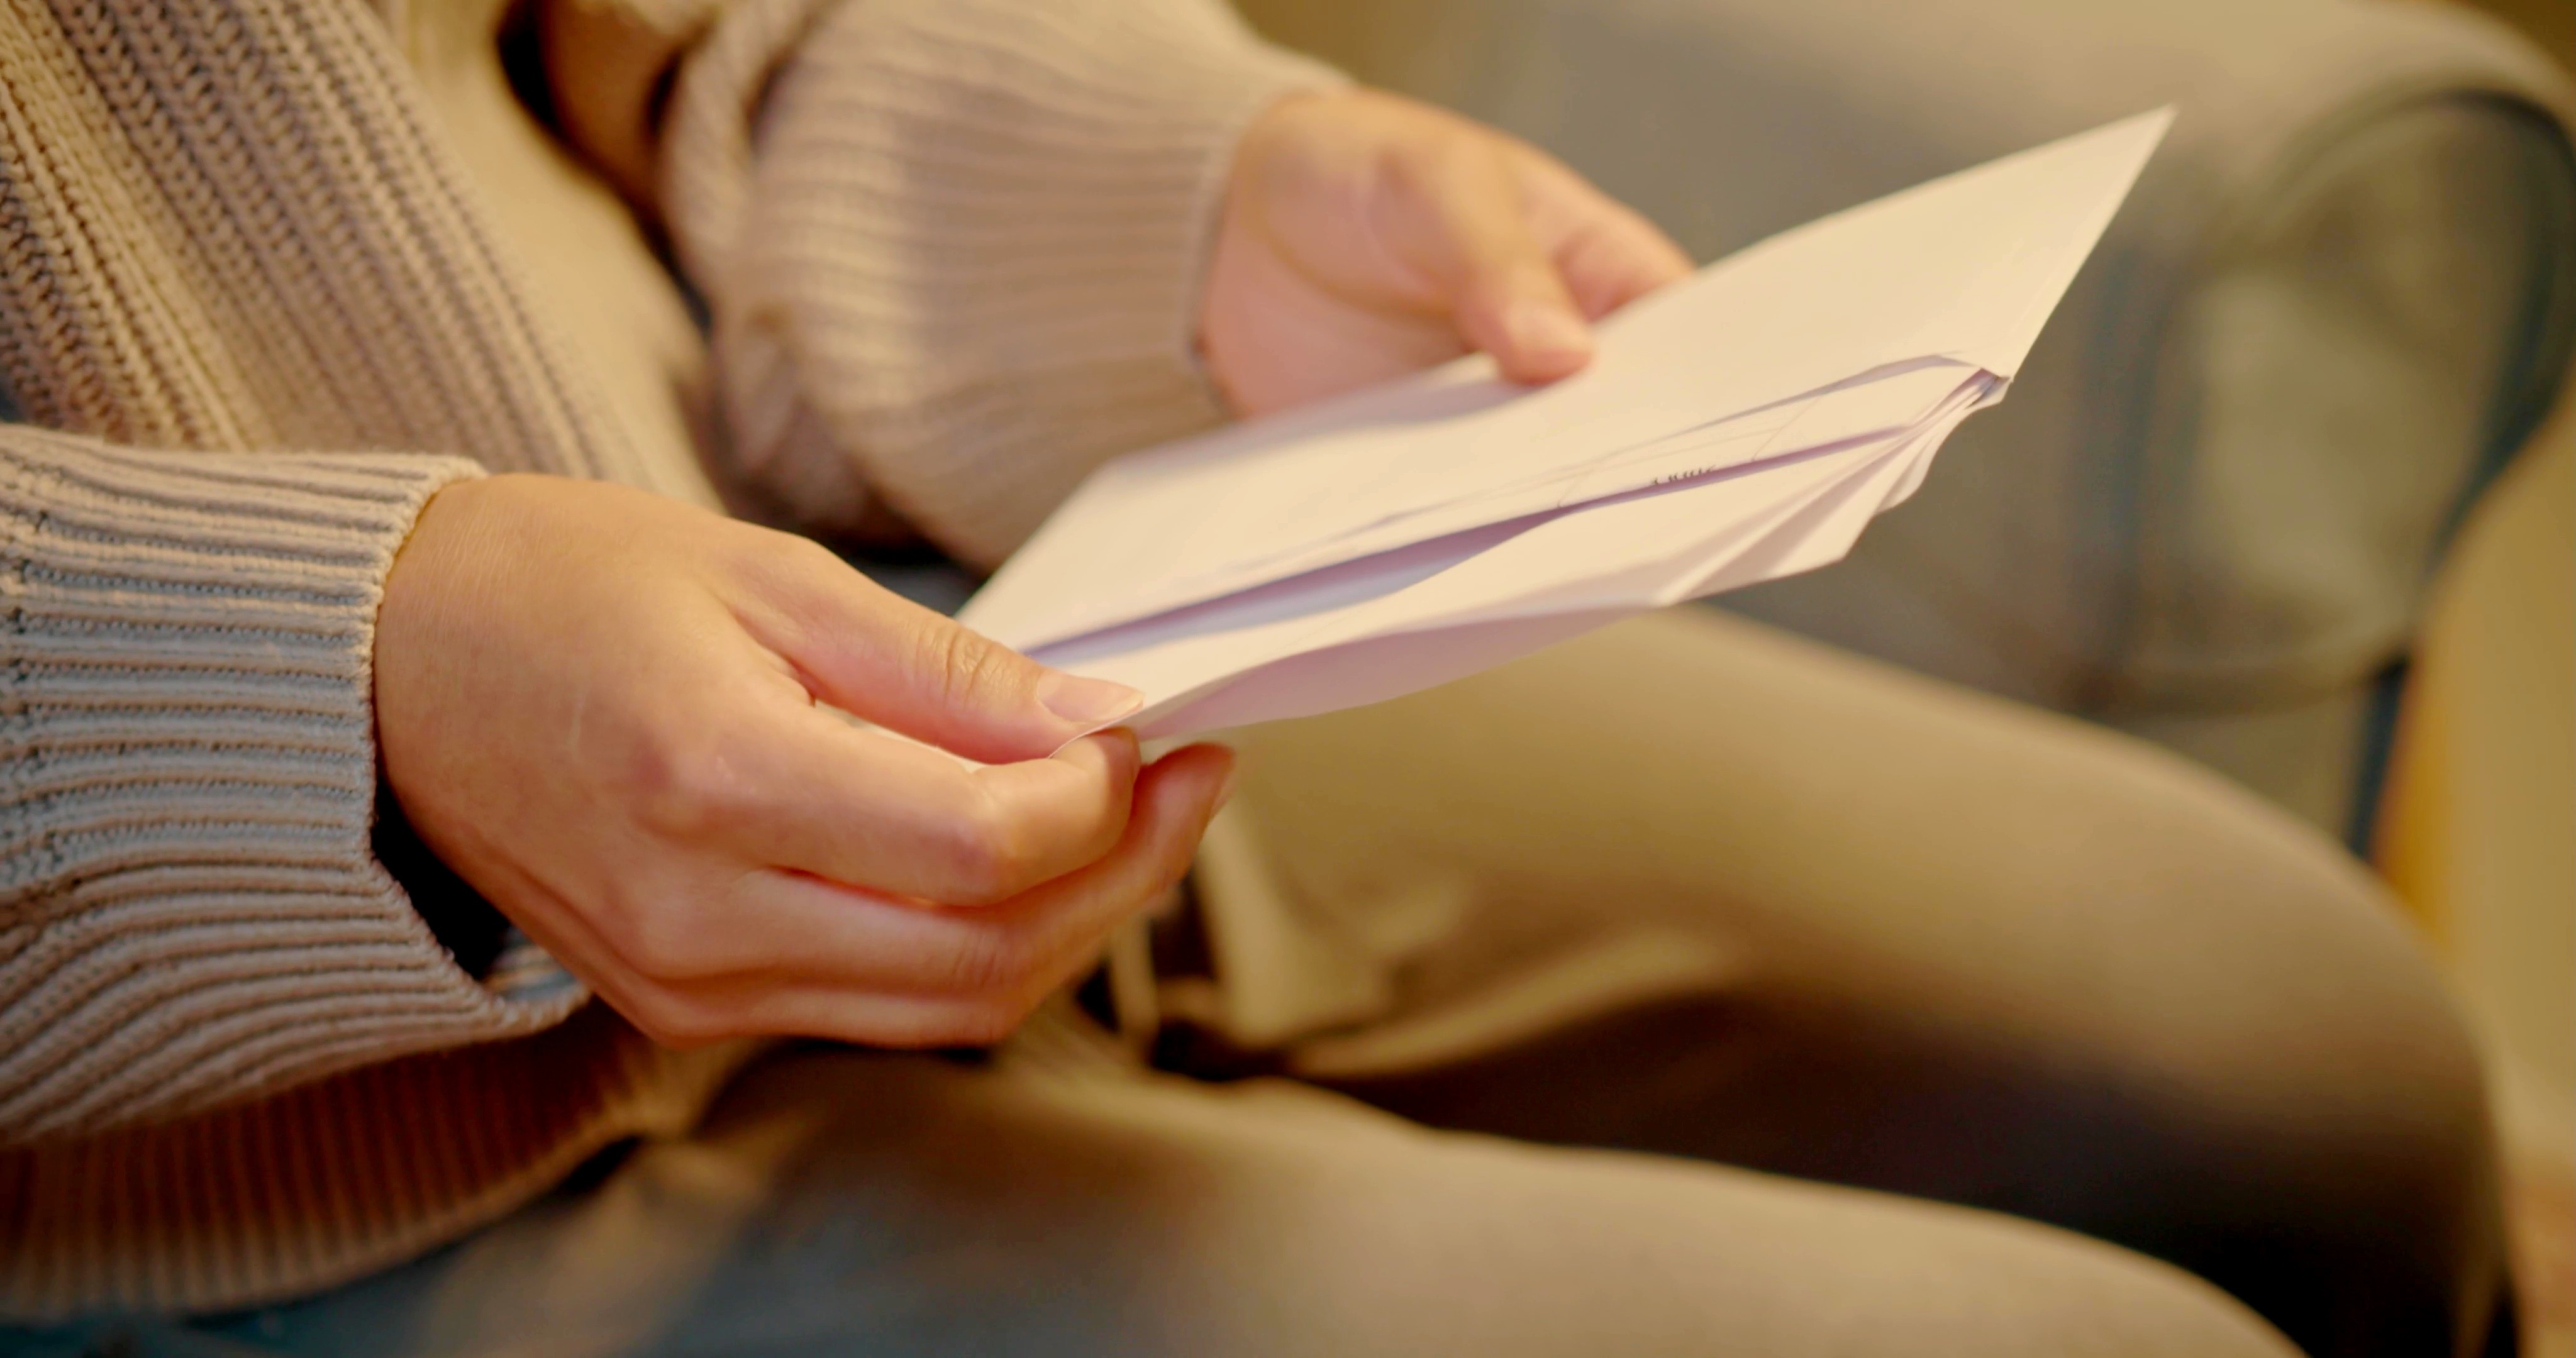 Eine Frau öffnet einen Umschlag | Quelle: Shutterstock